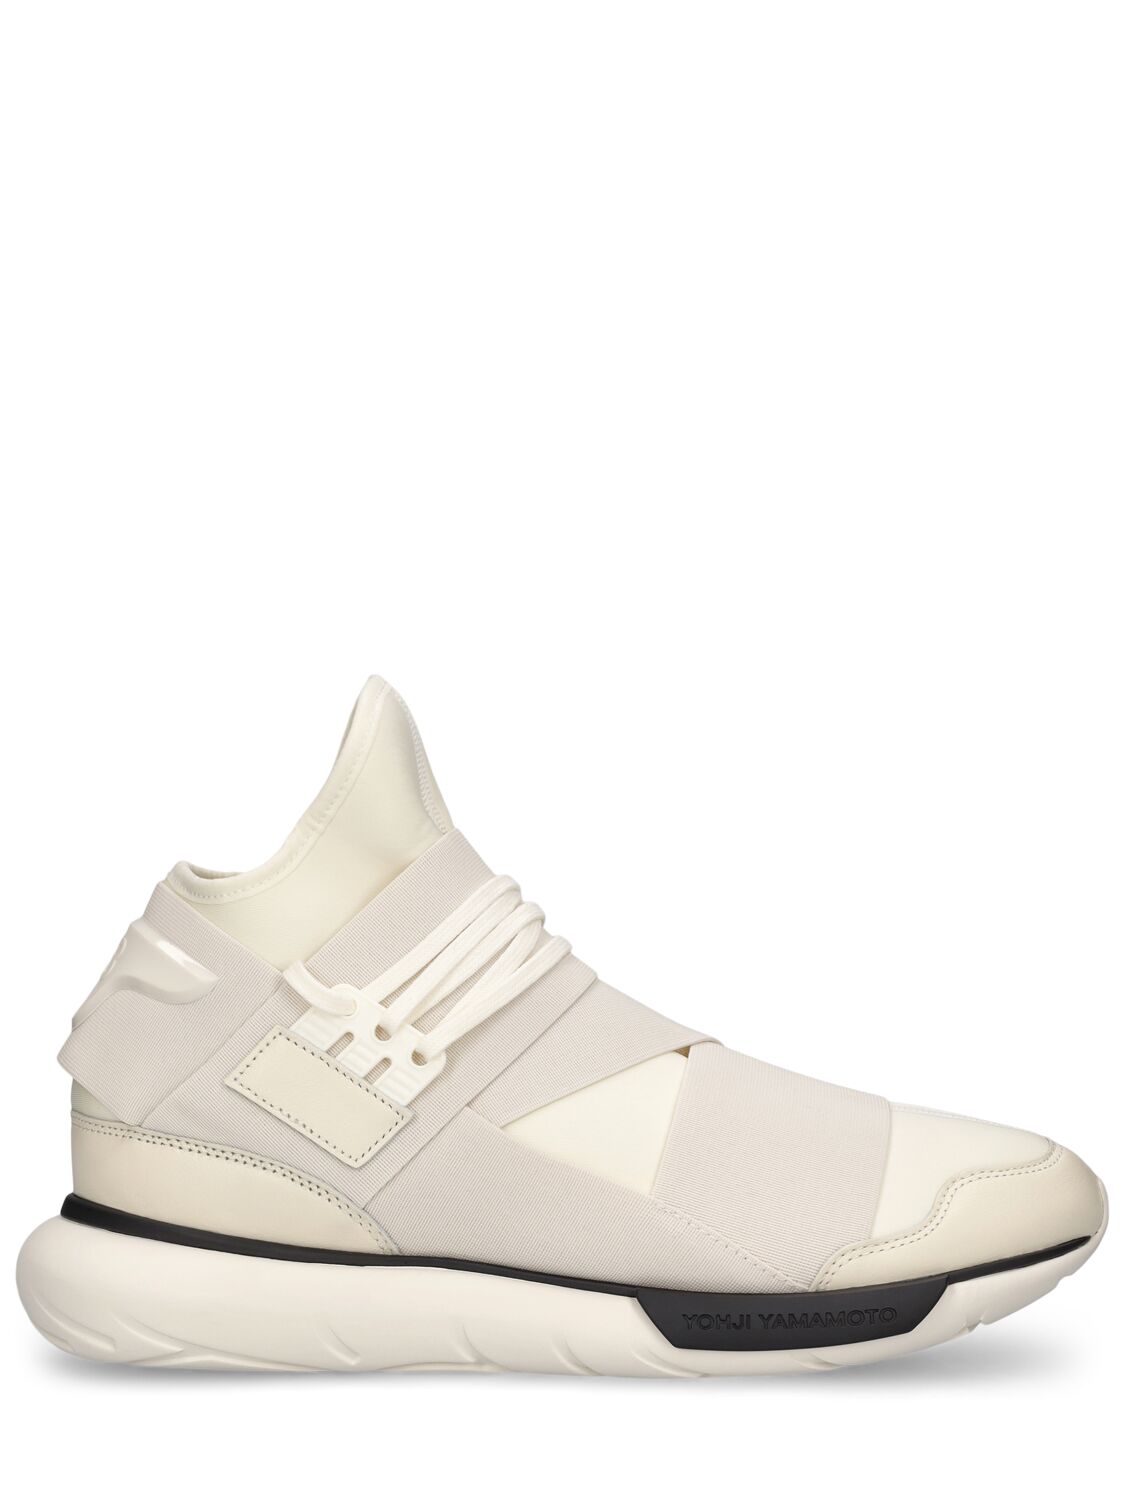 Y-3 Qasa Sneakers In Beige,white